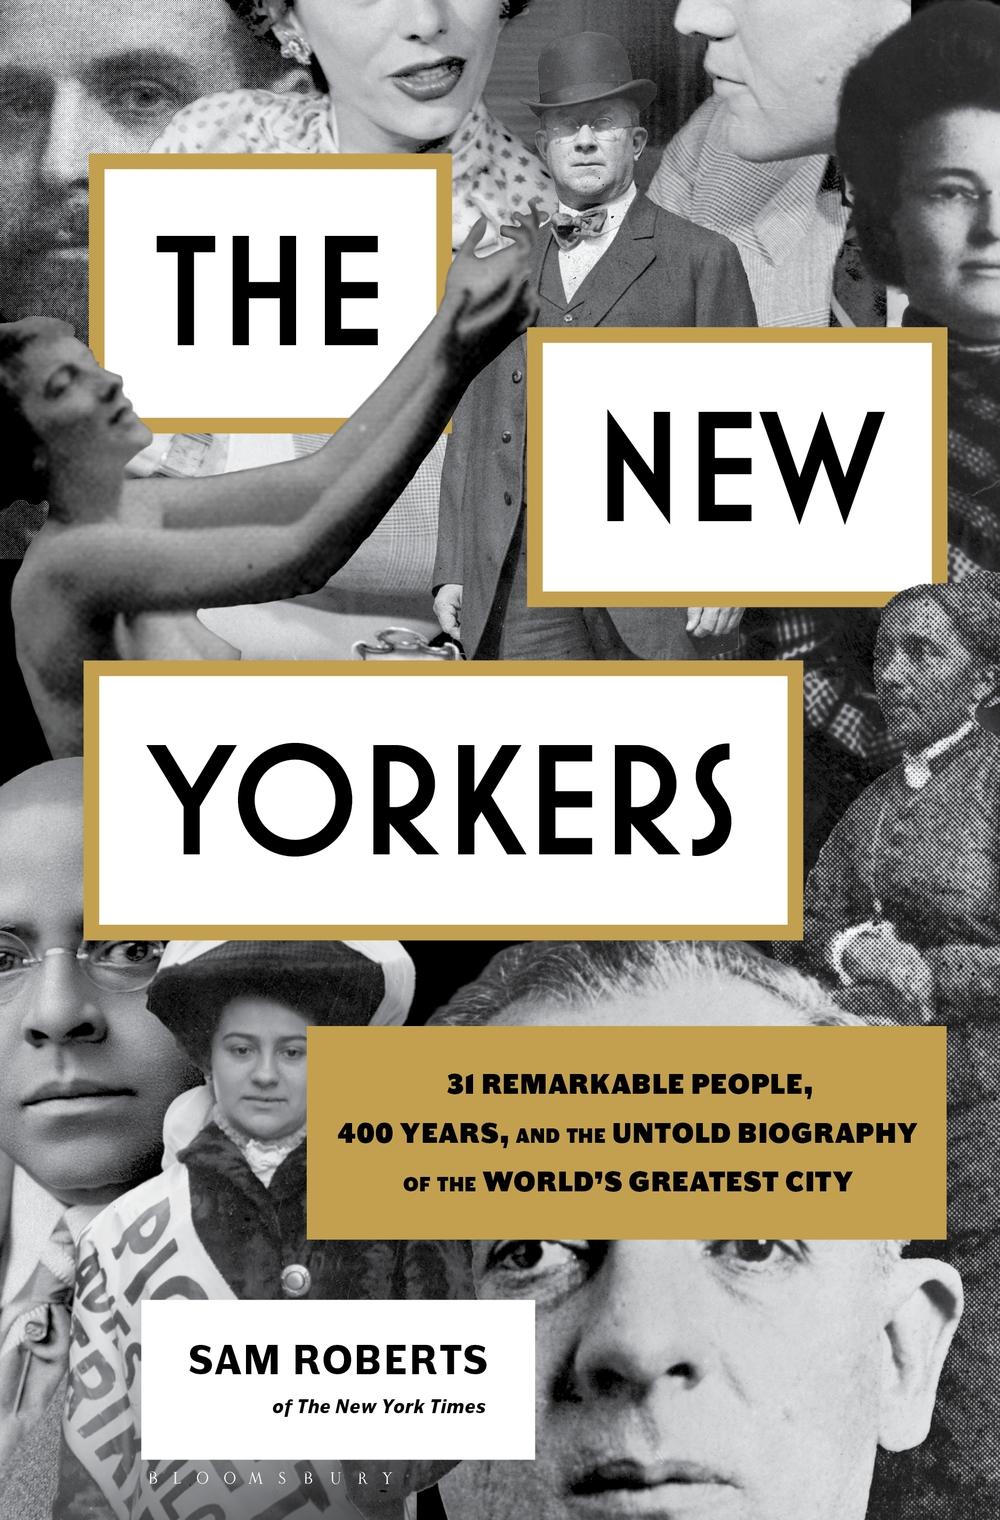 Couverture du livre "The New Yorkers" par Sam Roberts. Collage de différentes personnalités importantes de New York en noir et blanc